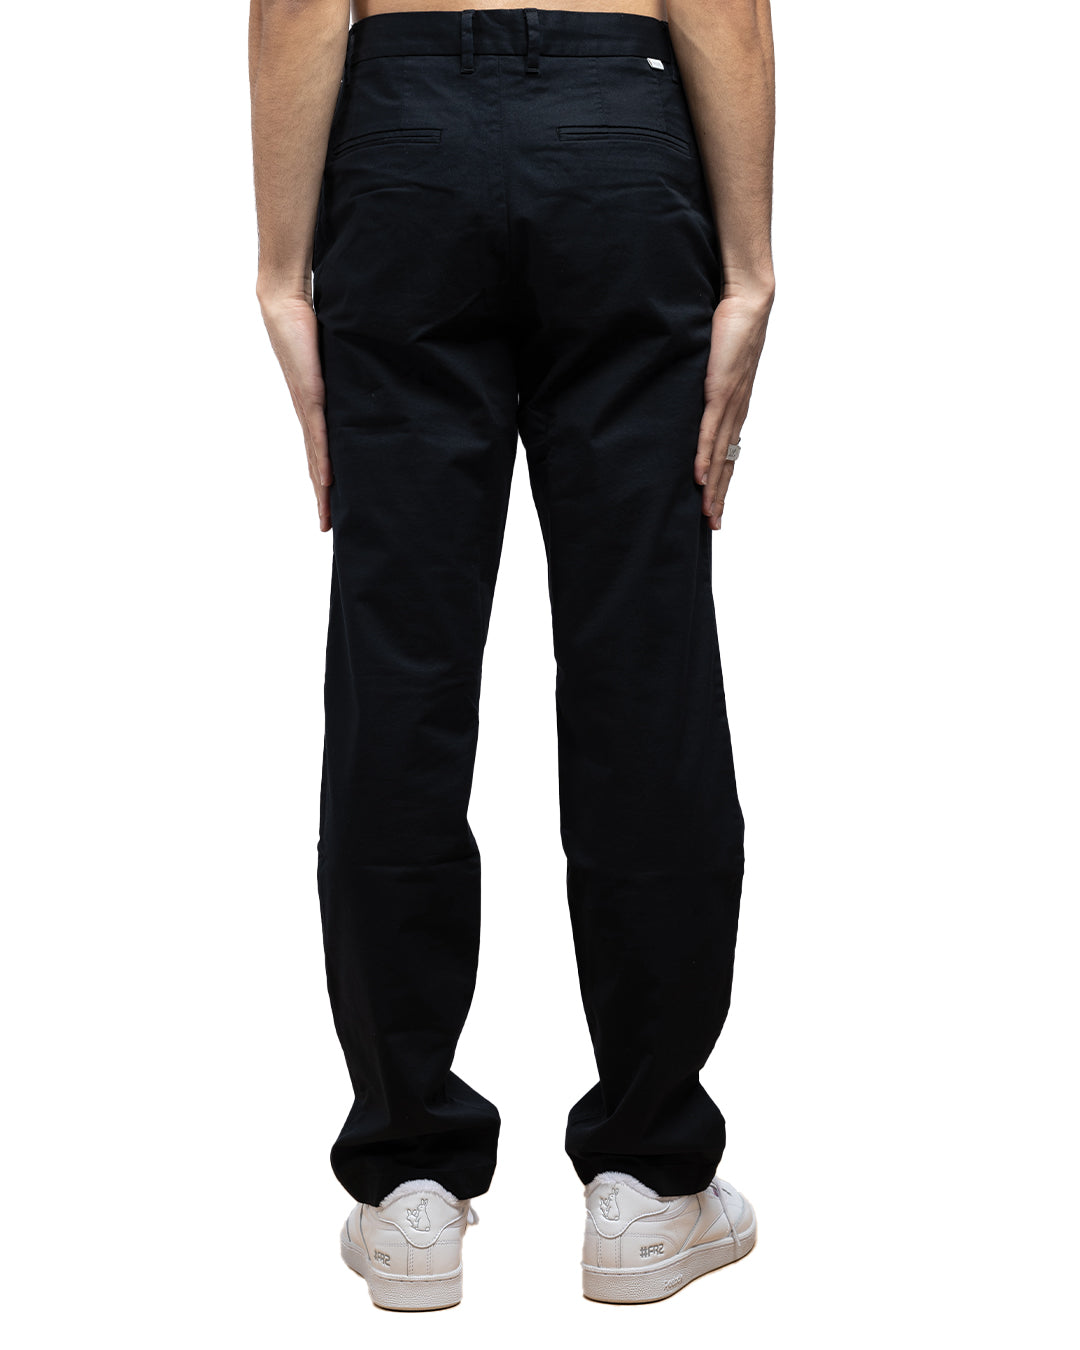 wood Slim Fit Men Grey Trousers - Buy Grey wood Slim Fit Men Grey Trousers  Online at Best Prices in India | Flipkart.com